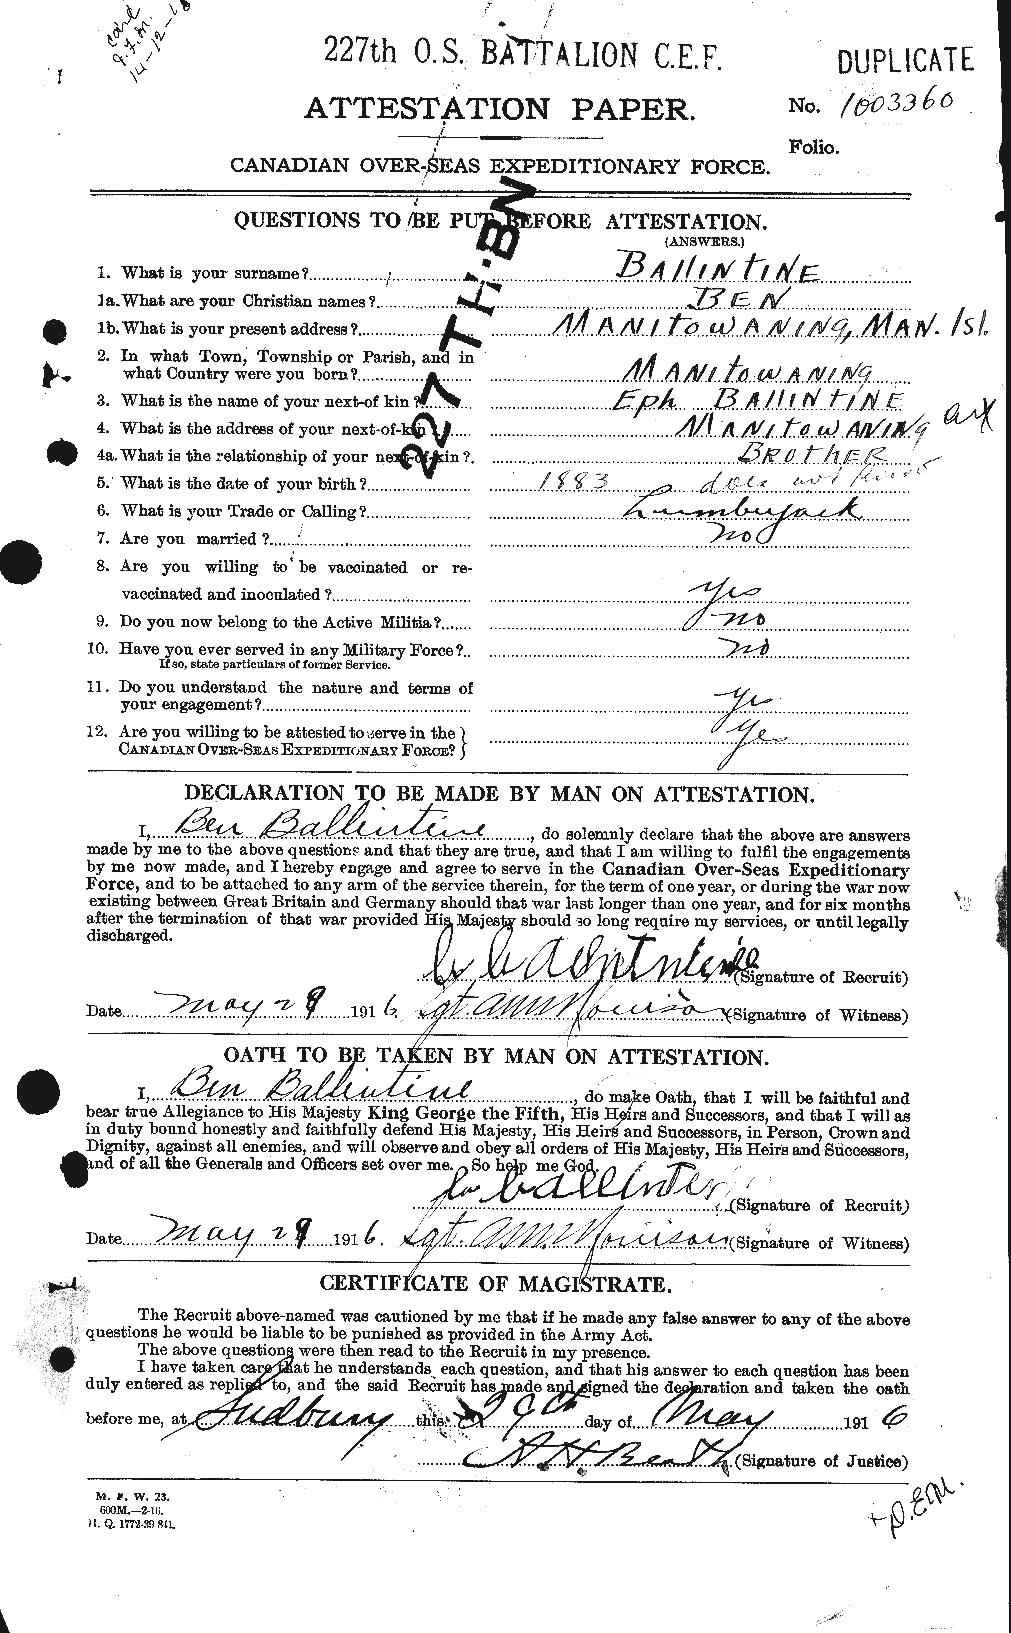 Dossiers du Personnel de la Première Guerre mondiale - CEC 219631a